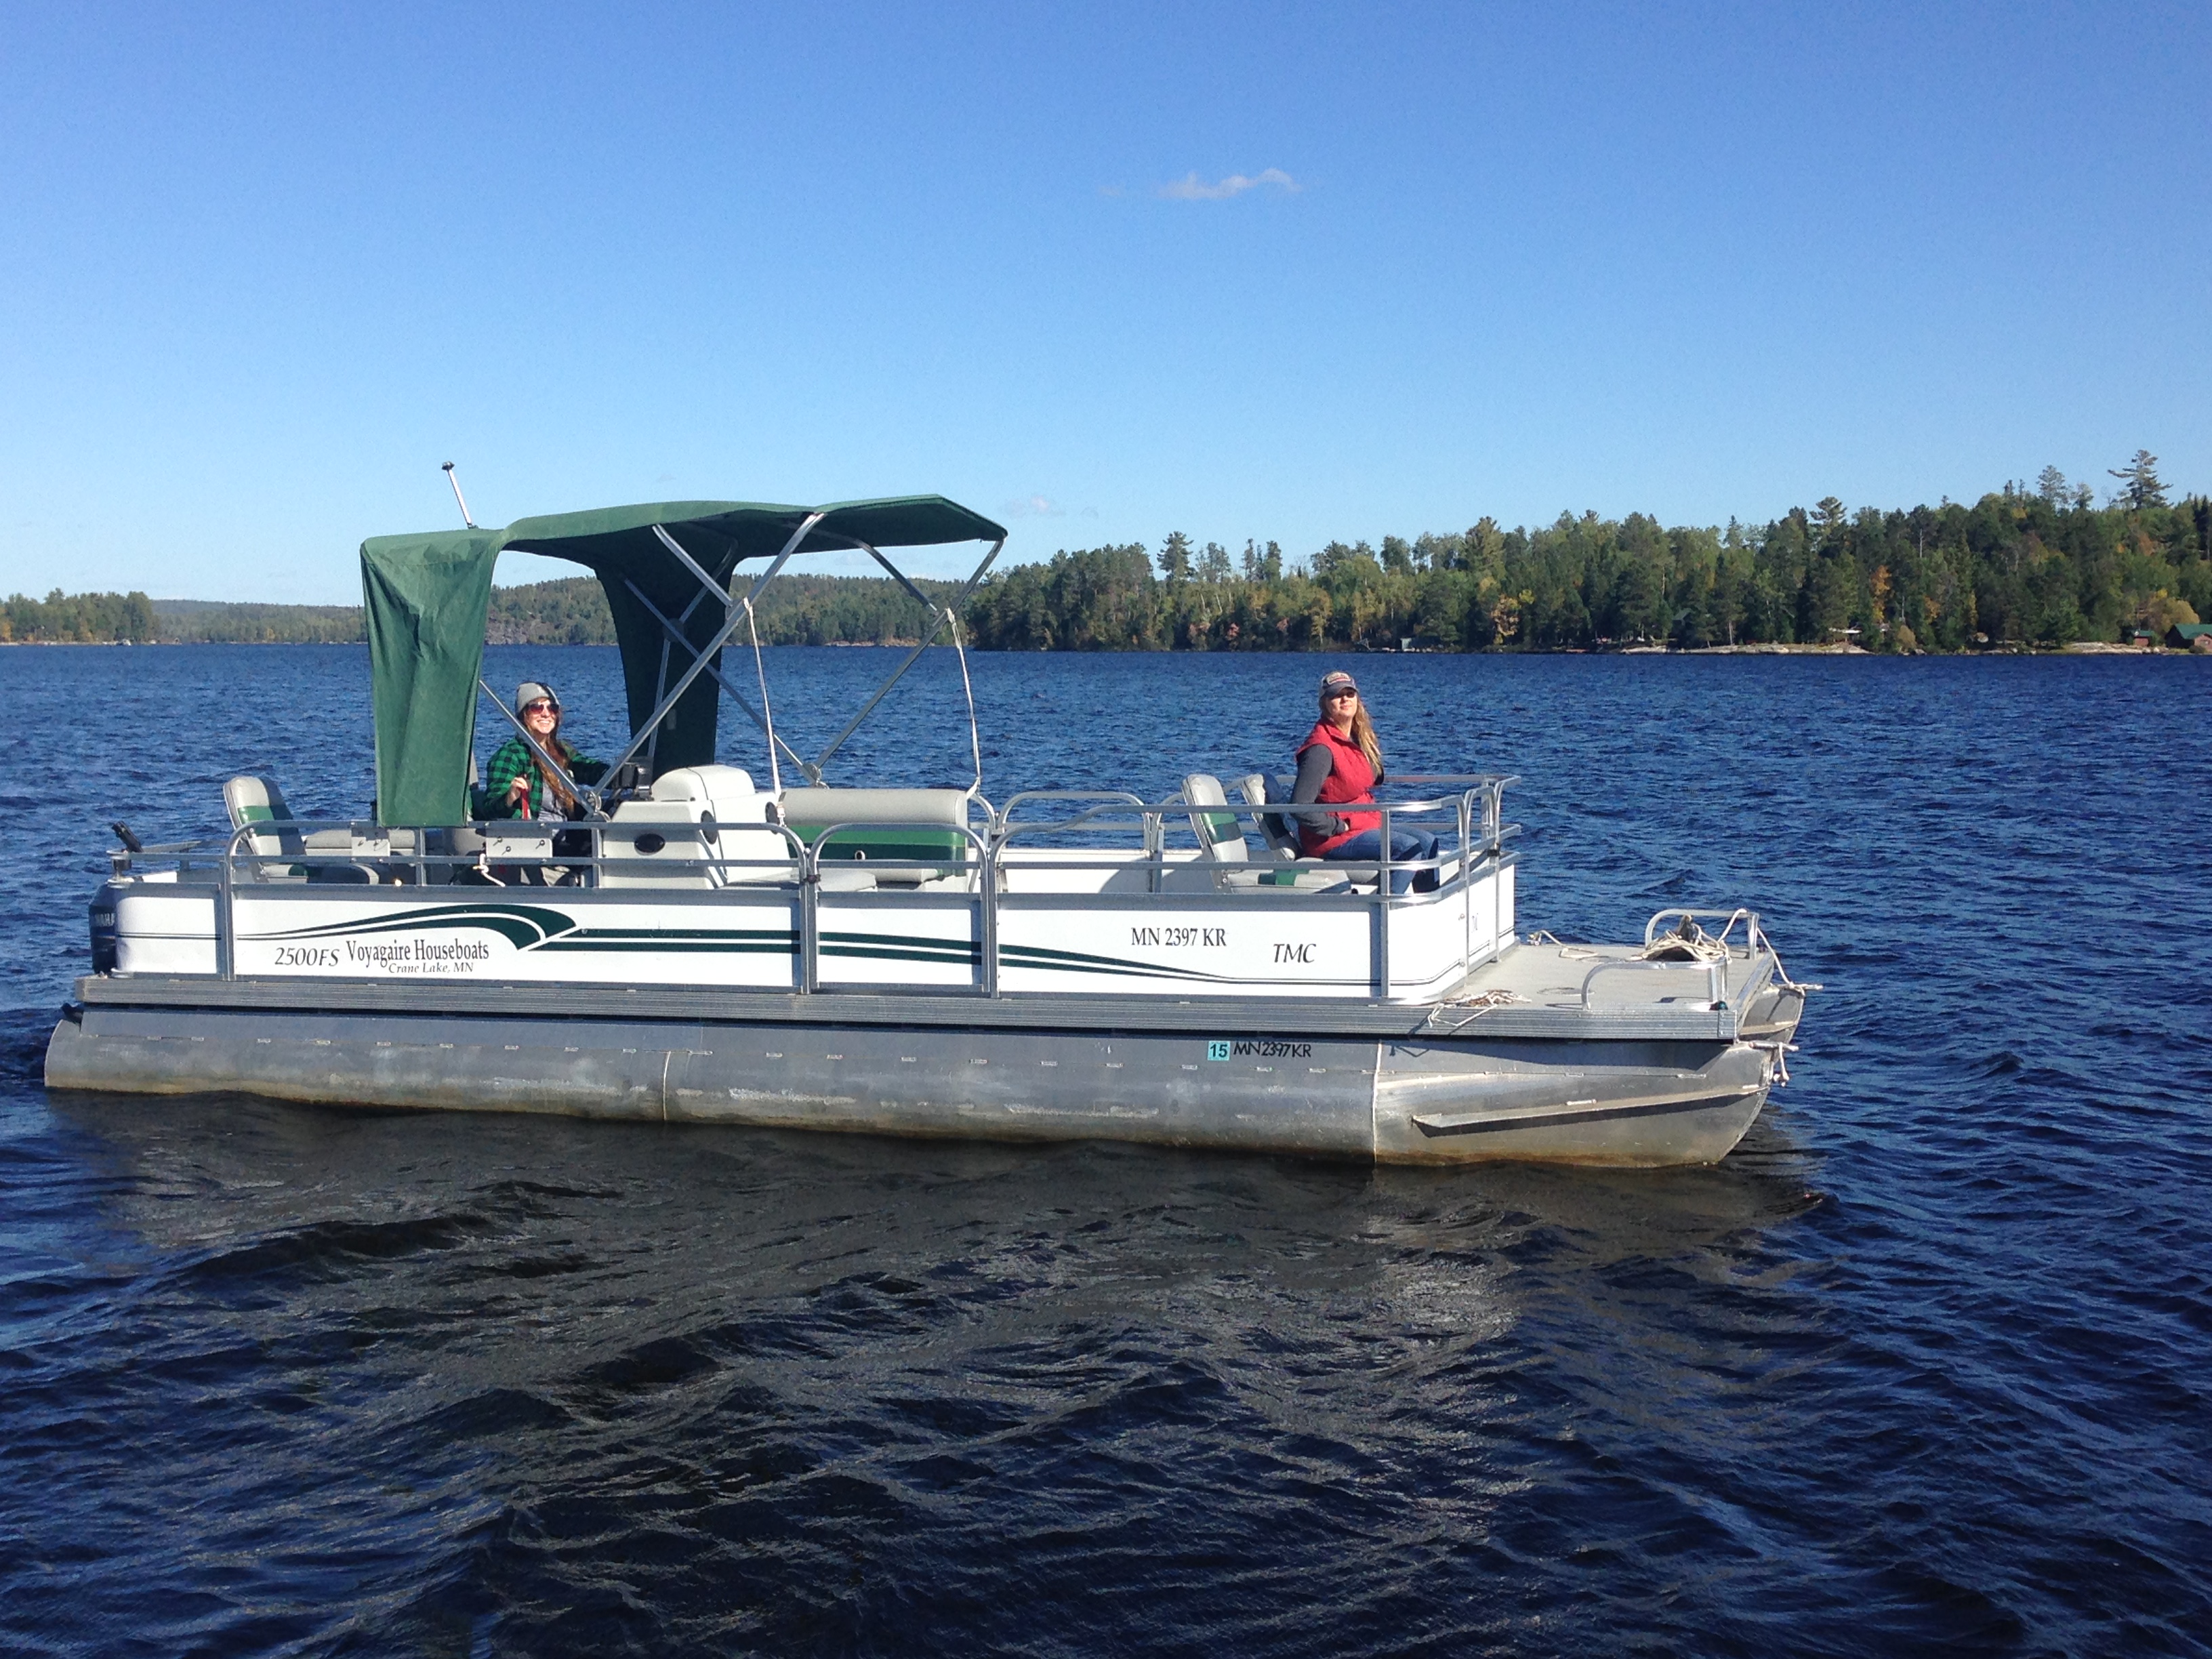 Crane Lake Boat Rentals - Houseboats - Crane Lake - Minnesota ...